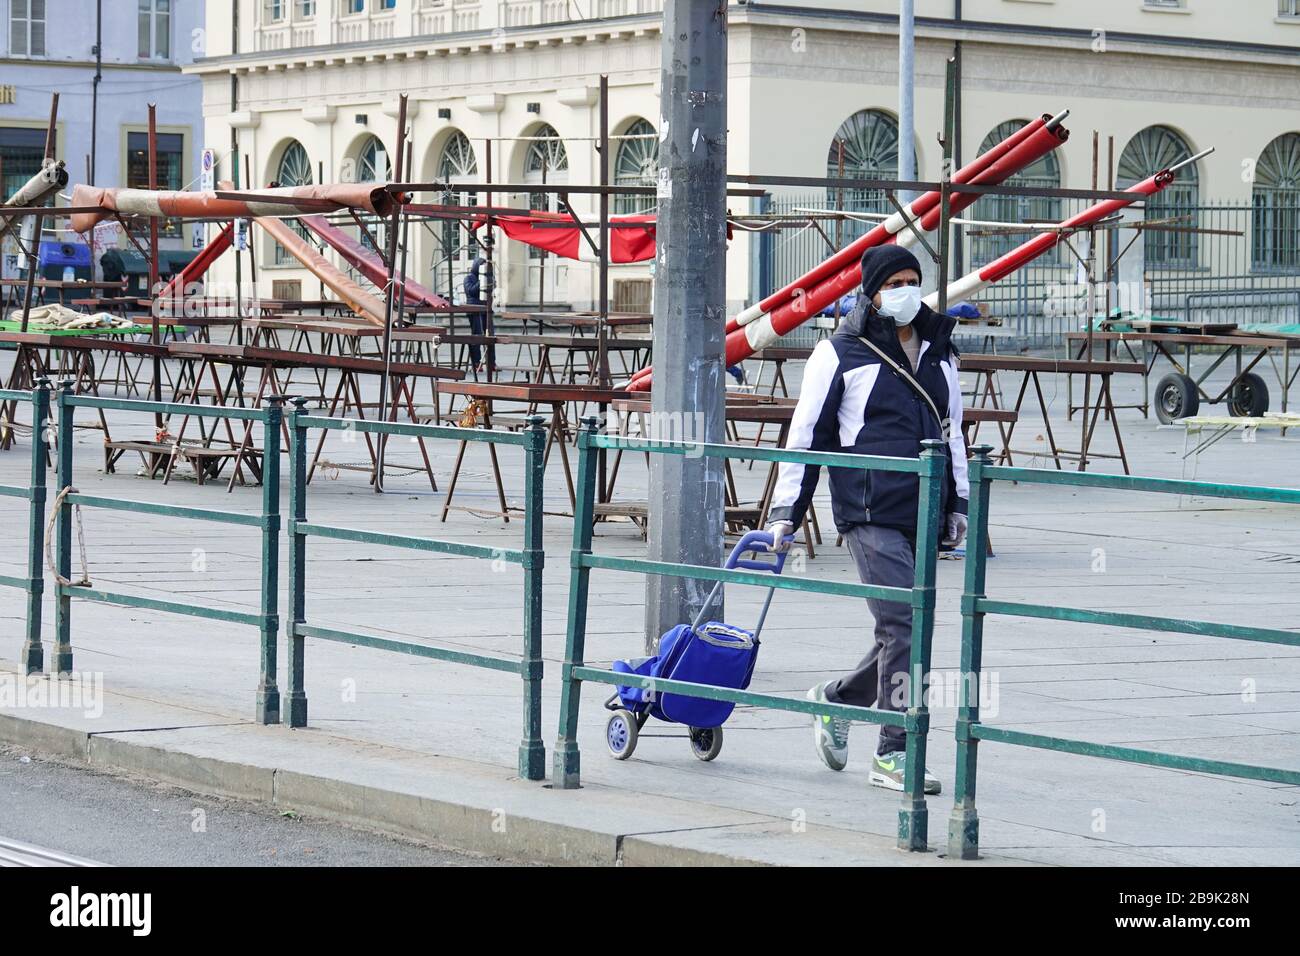 Le Coronavirus arrête les marchés de Turin, mesure prise pour protéger la santé publique. Turin, Italie - Mars 2020 Banque D'Images